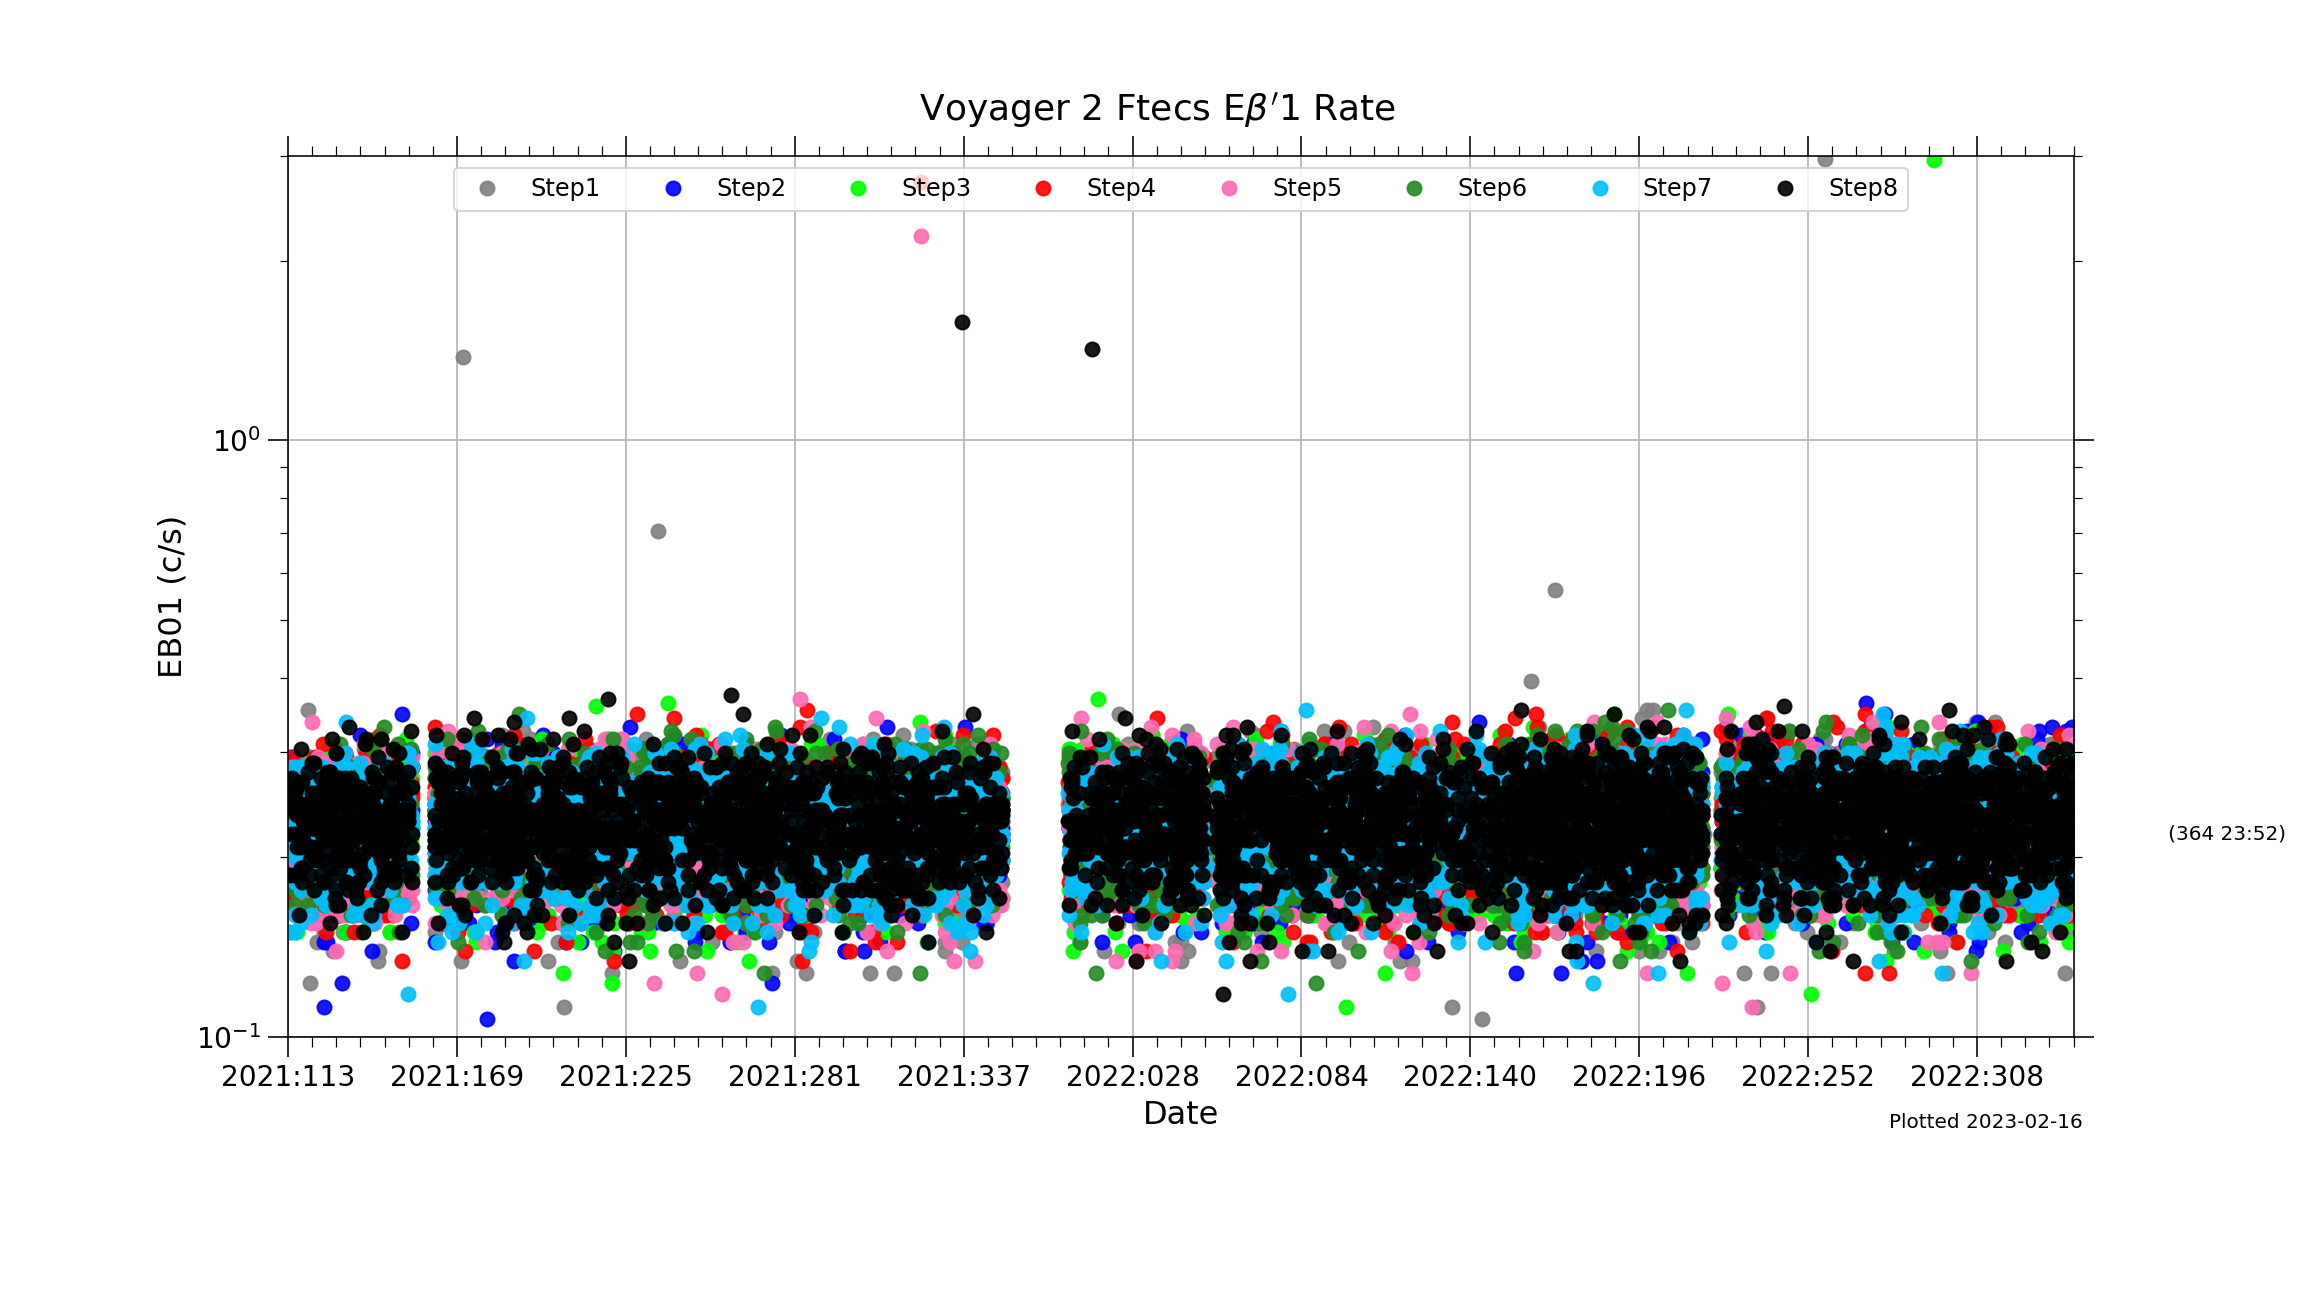 V2_Ftecs_EBP1_Rate_2021-22